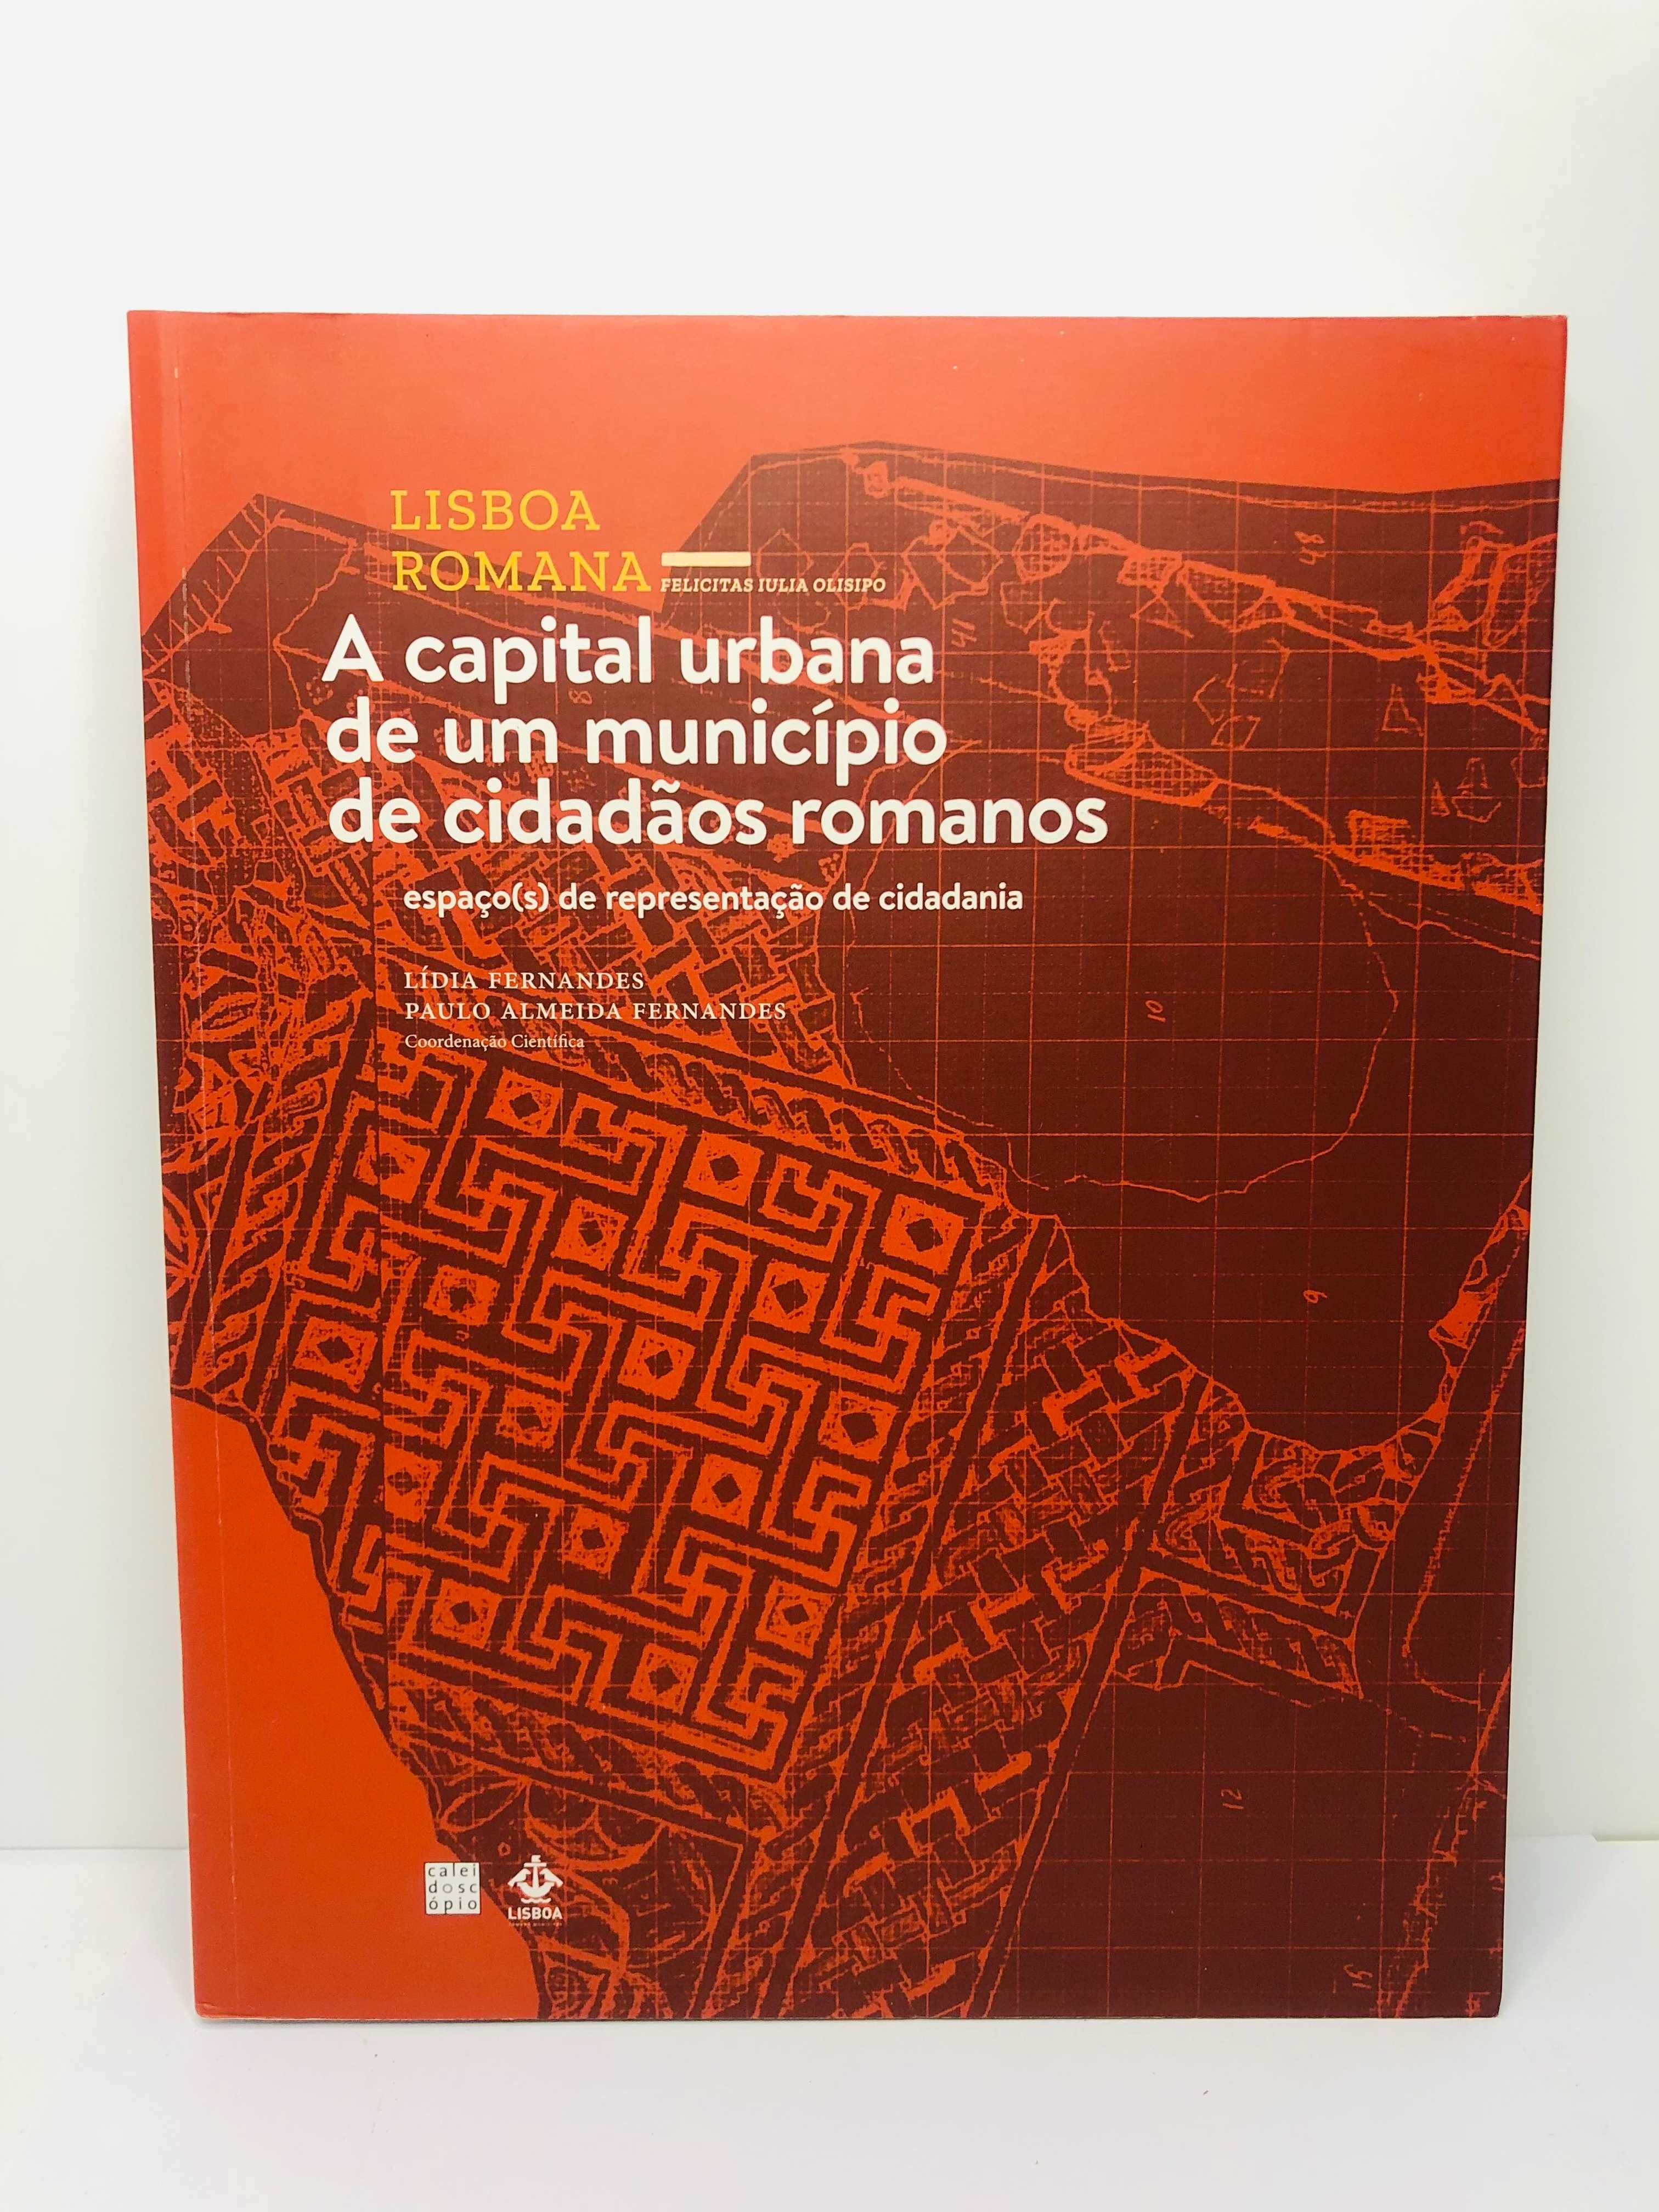 Lisboa Romana - A Capital Urbana de um Município de Cidadãos Romanos